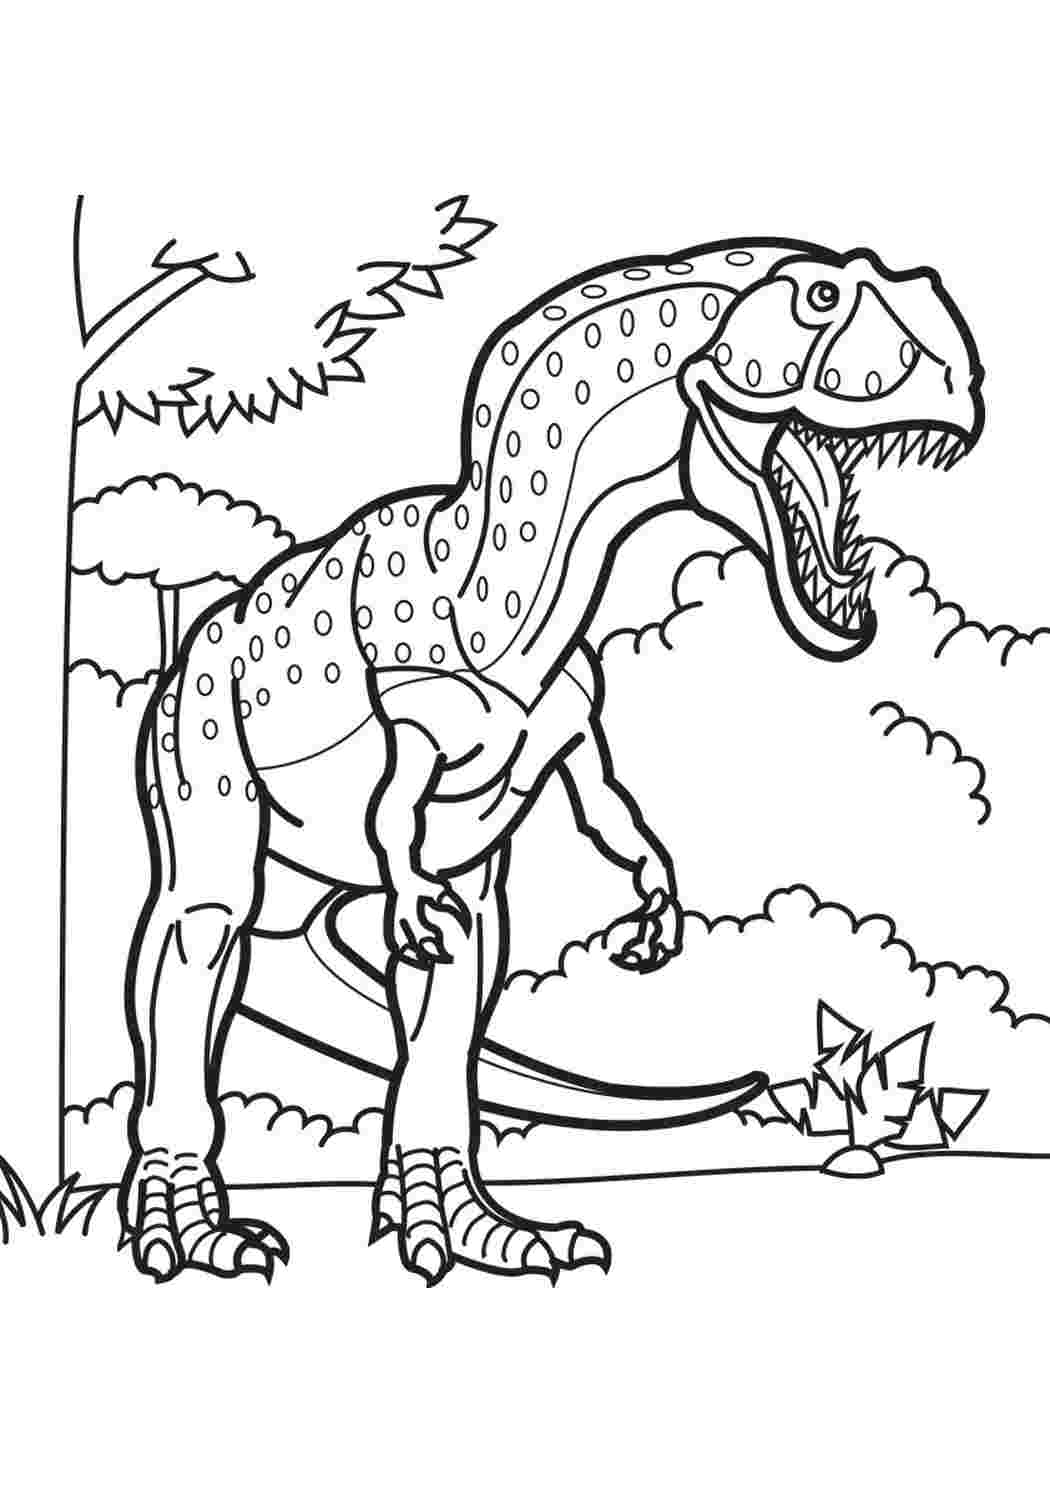 Раскраска динозавр формат а4. Гигантозавр раскраска. Динозавры / раскраска. Раскраска "Динозаврики". Динозавр раскраска для детей.